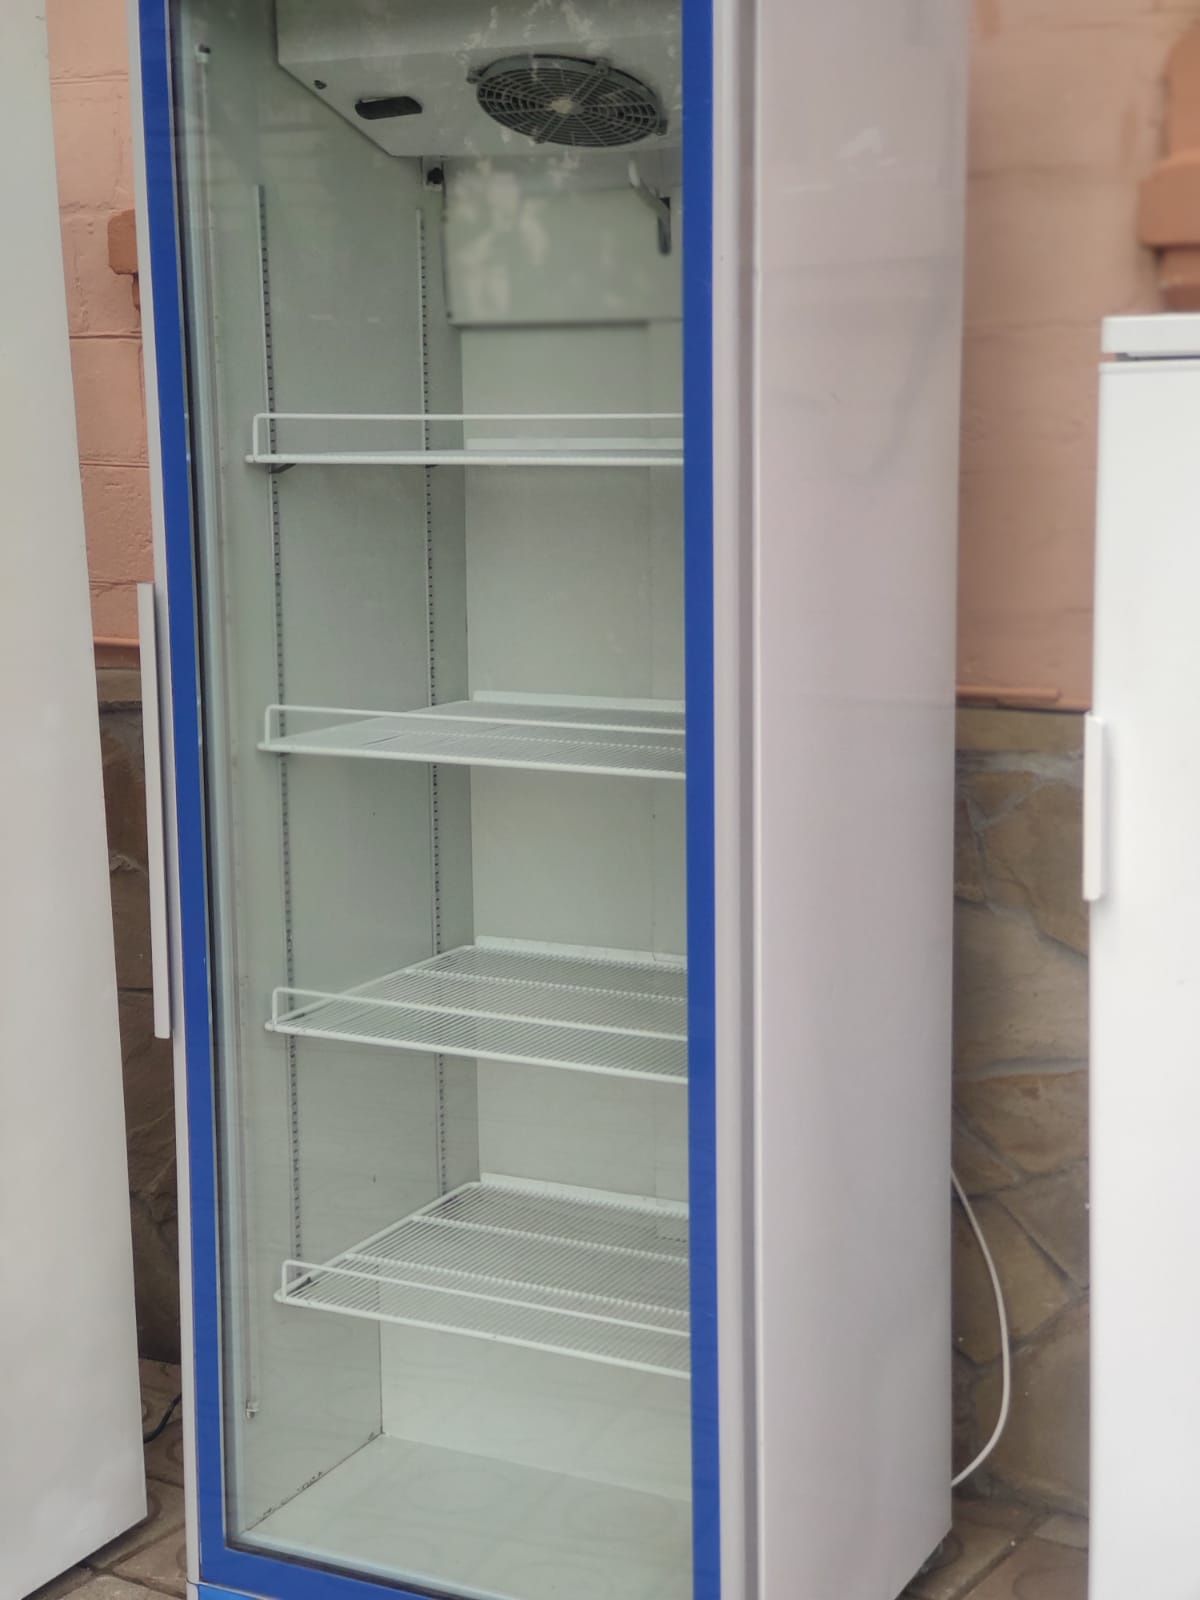 Холодильный шкаф Klimasan